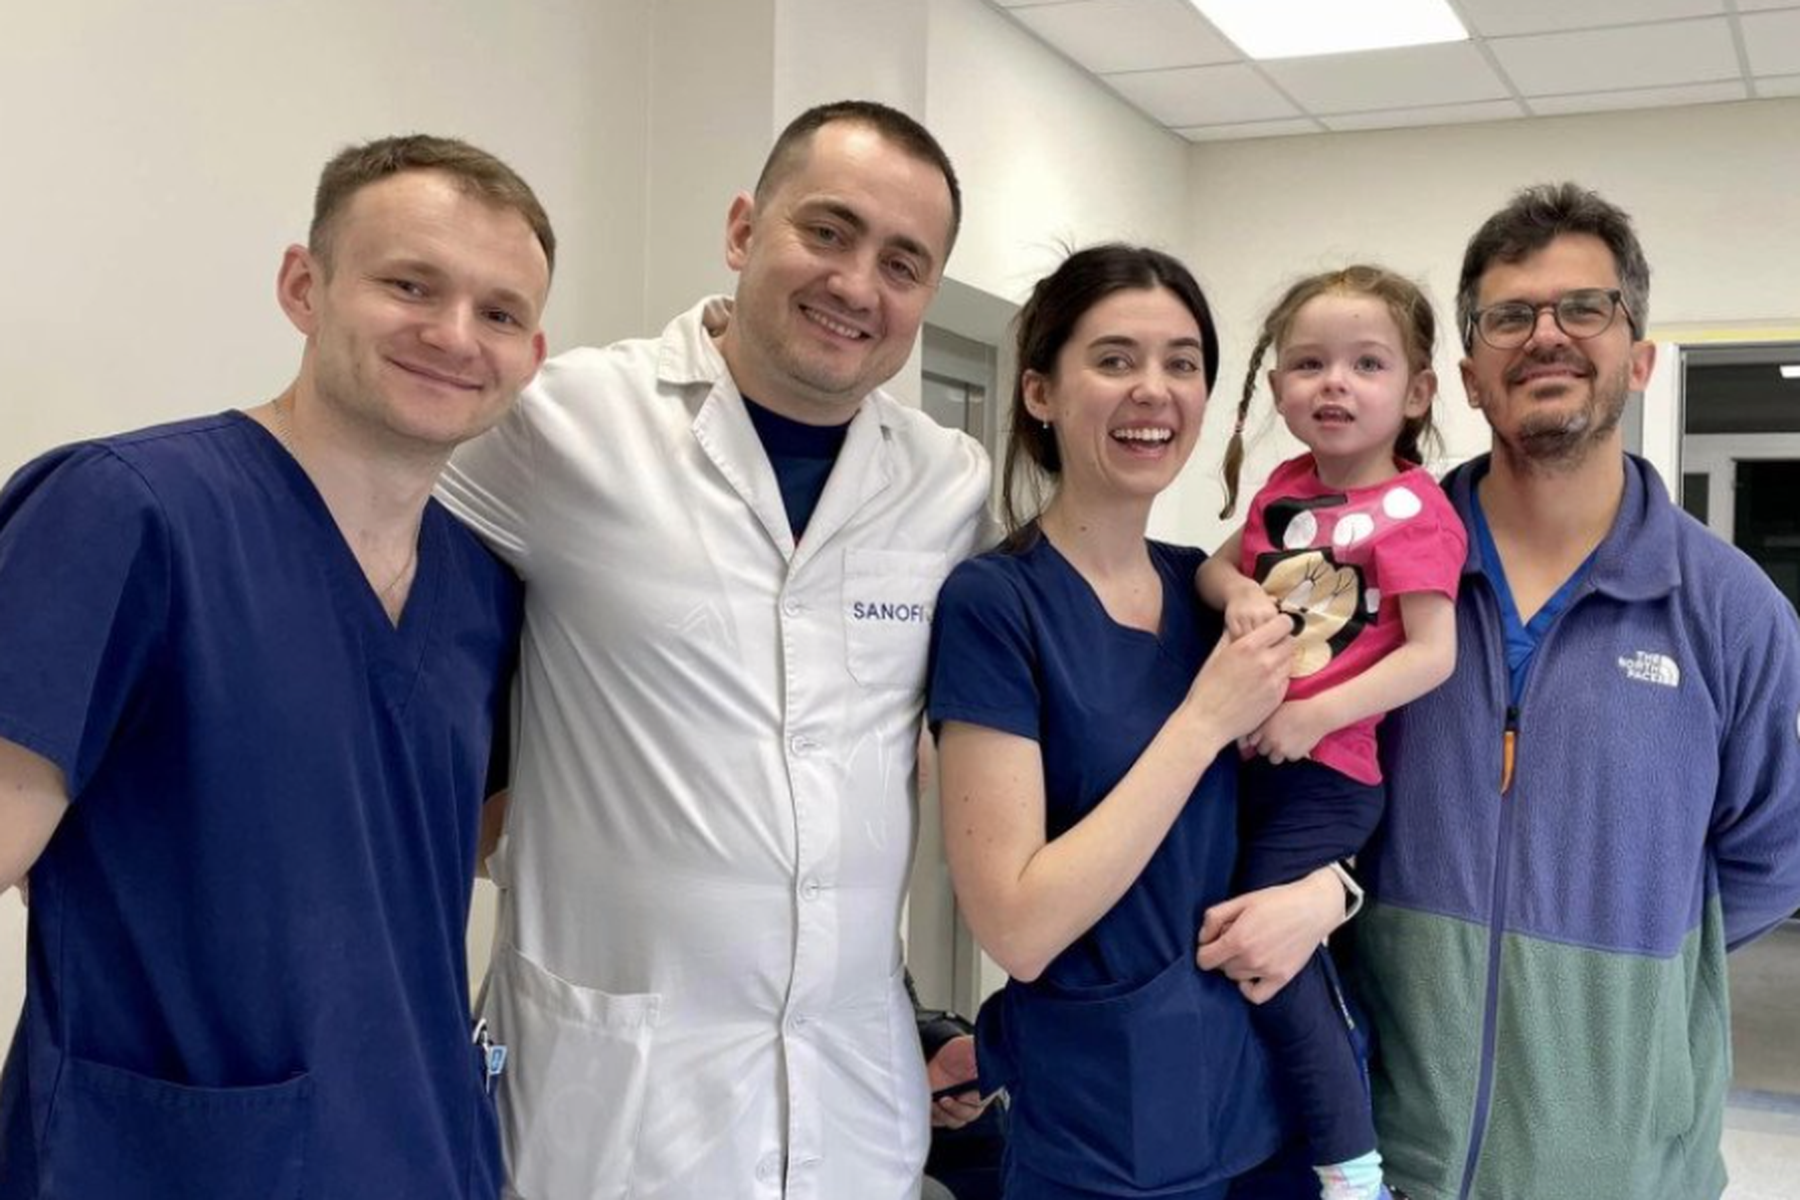 good news zum wochenende: chirurgen retten vierjährige mit hirn-op